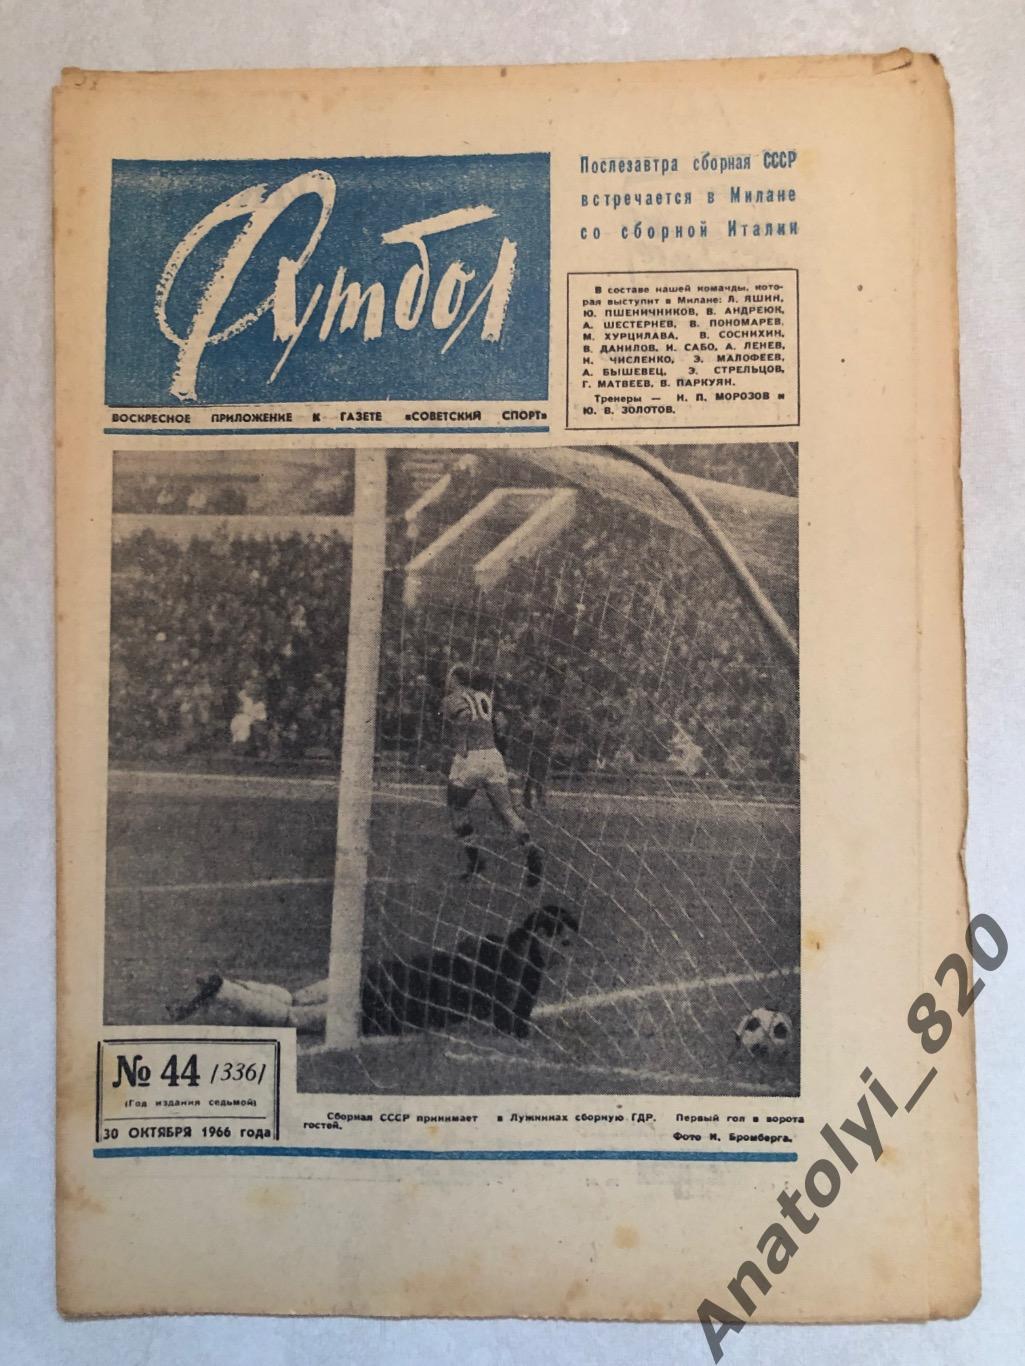 Еженедельник футбол номер 44 от 30.10.1966